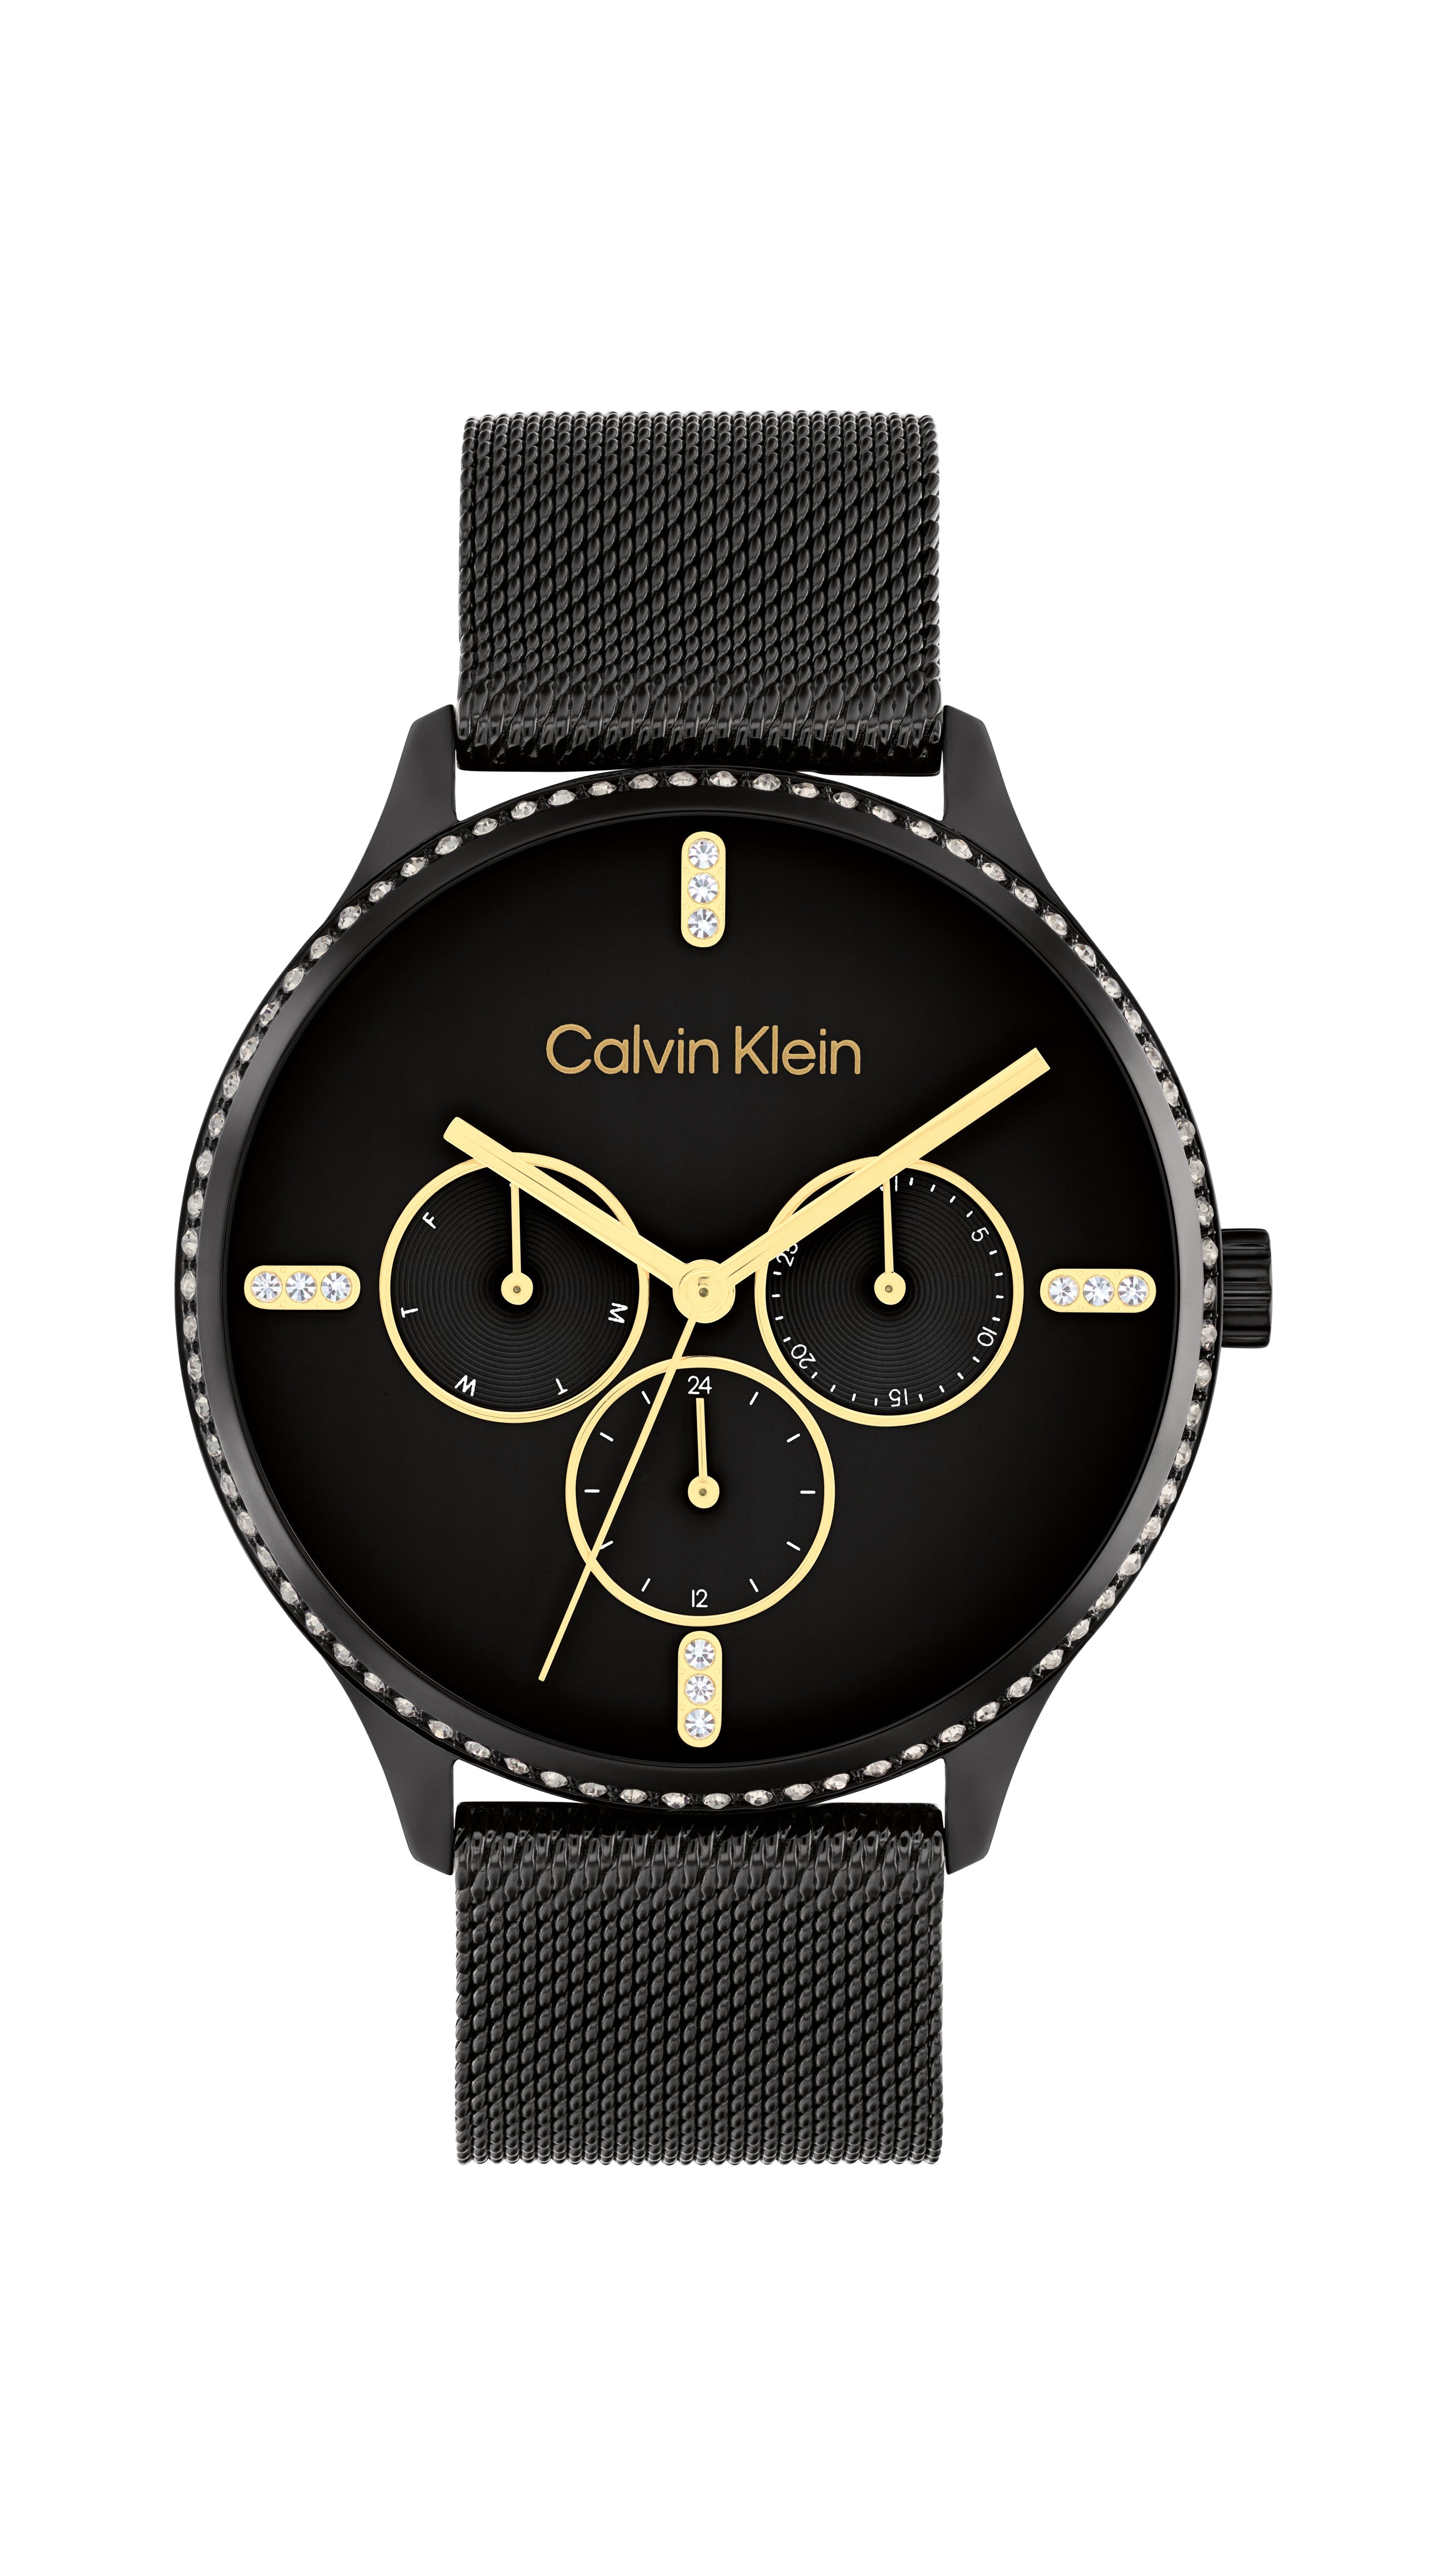 Calvin Klein 25200307 Price  Calvin Klein Watch CK FASHION 25200307  FEARLESS